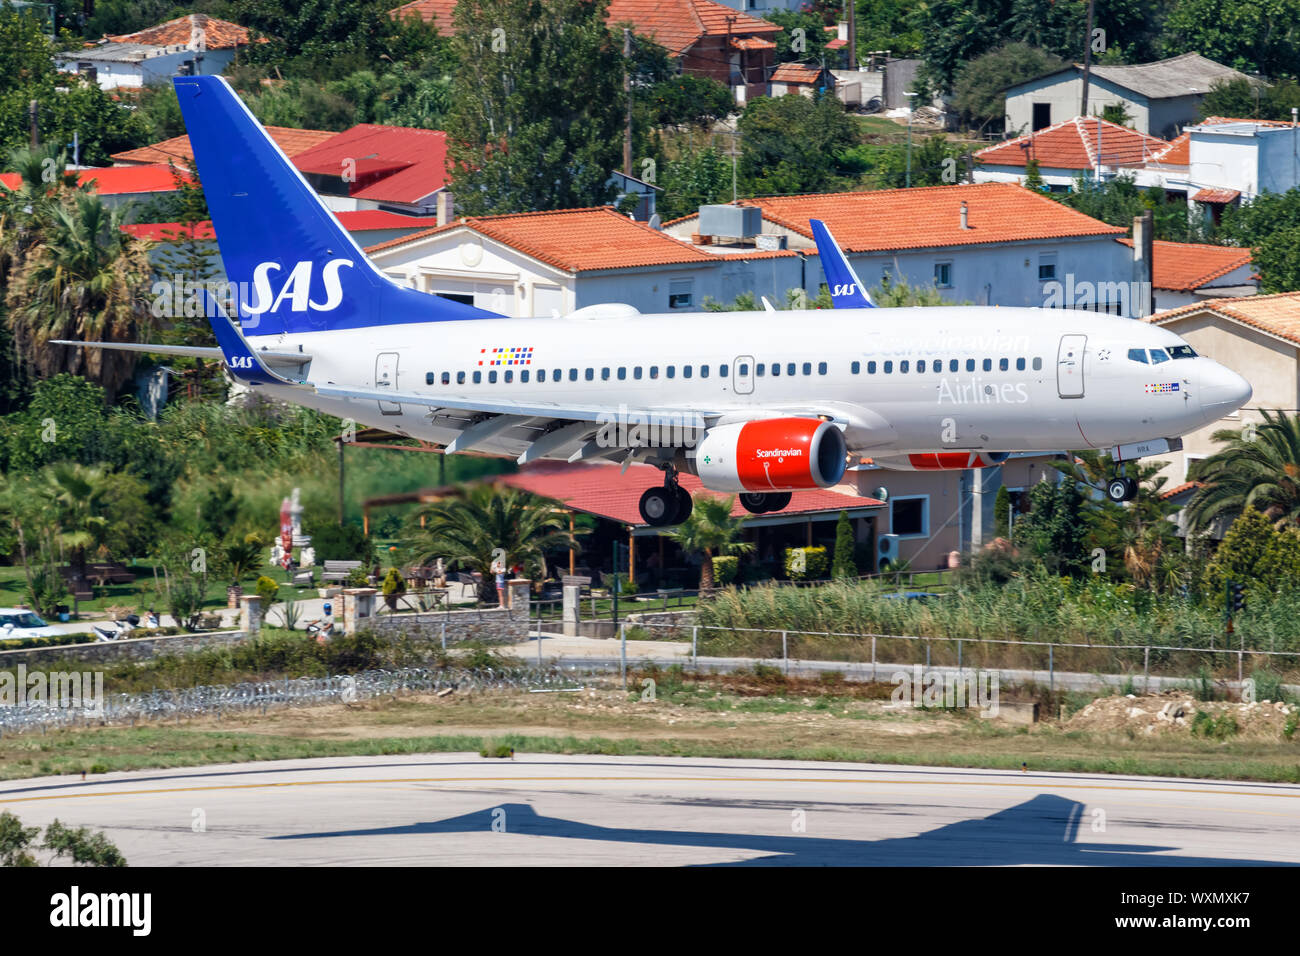 Skiathos, Grèce - 27 juillet 2019 - SAS - Scandinavian Airlines Boeing 737-700 à l'aéroport de Skiathos (JSI) en Grèce. Banque D'Images